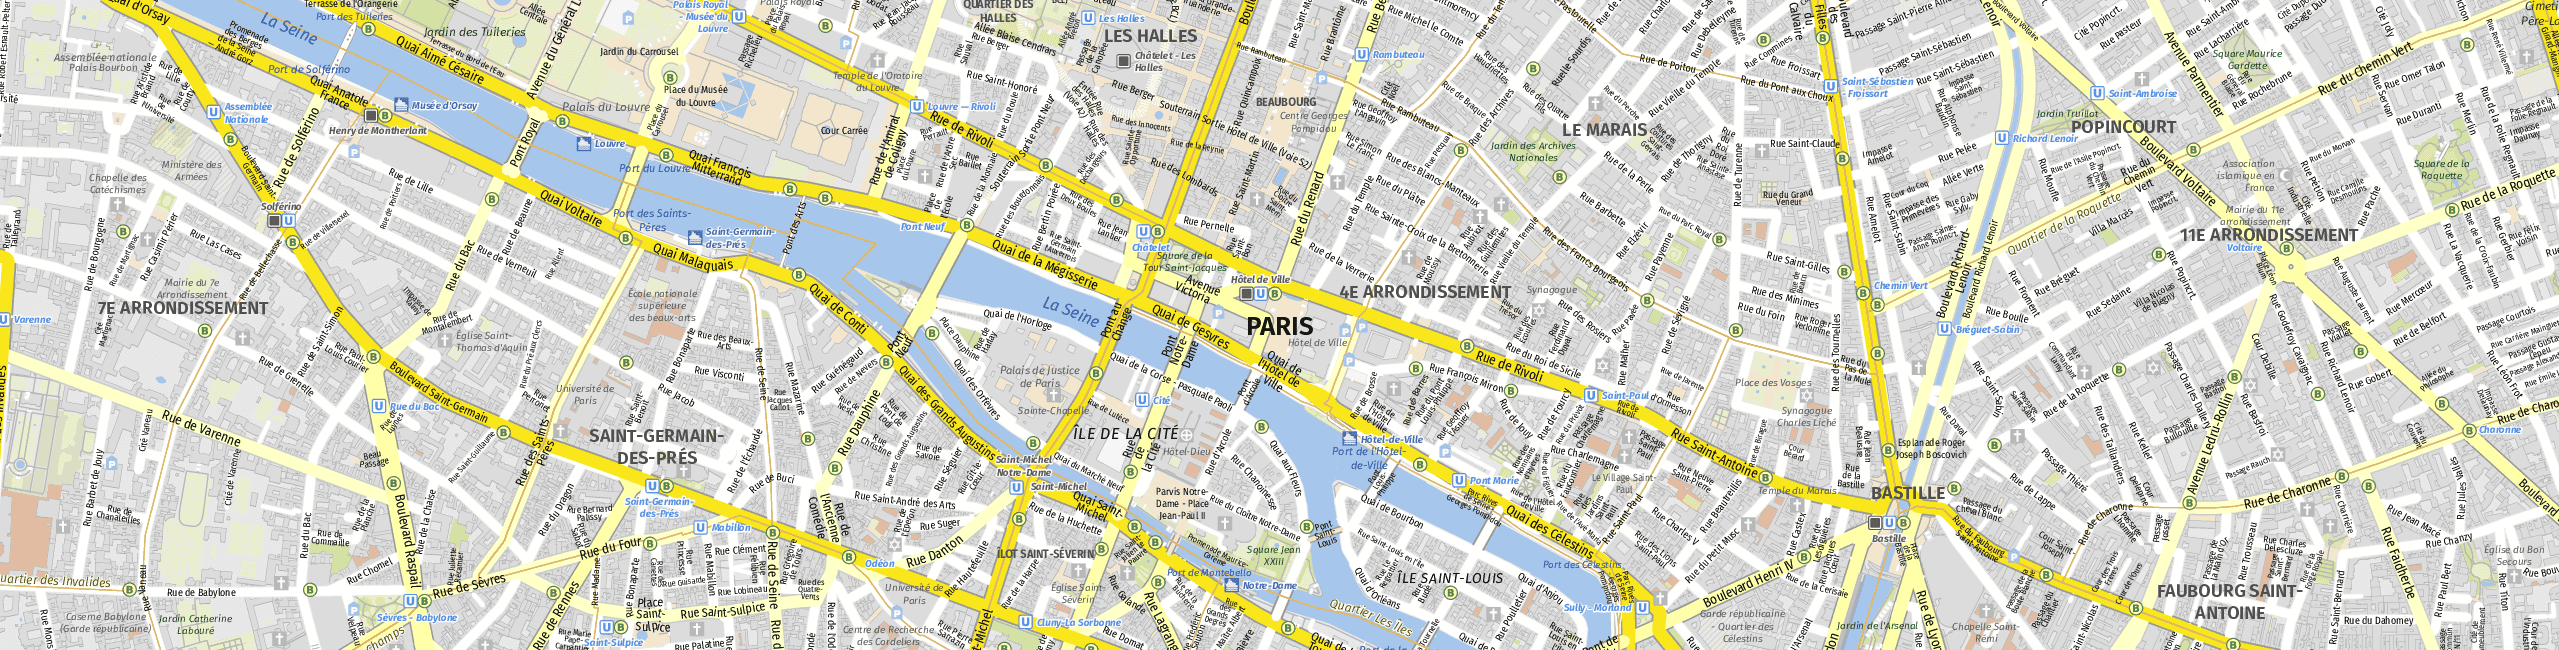 Stadtplan Paris zum Downloaden.